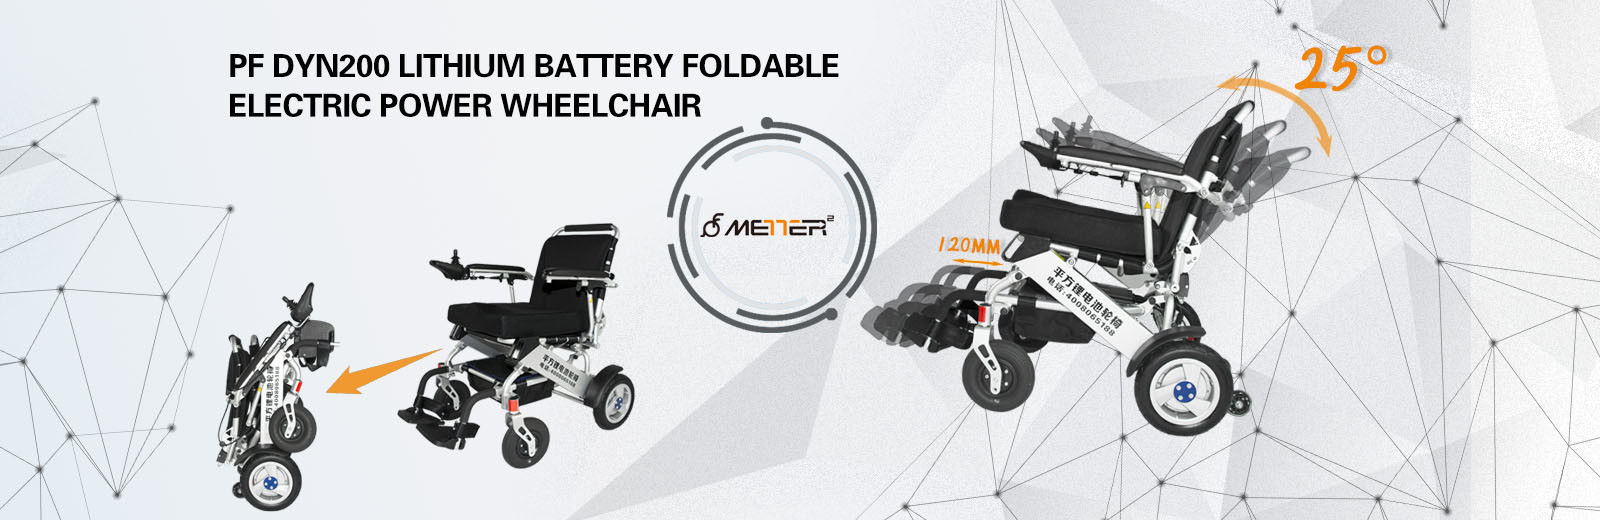 Φορητή πτυσσόμενη ηλεκτρική αναπηρική καρέκλα